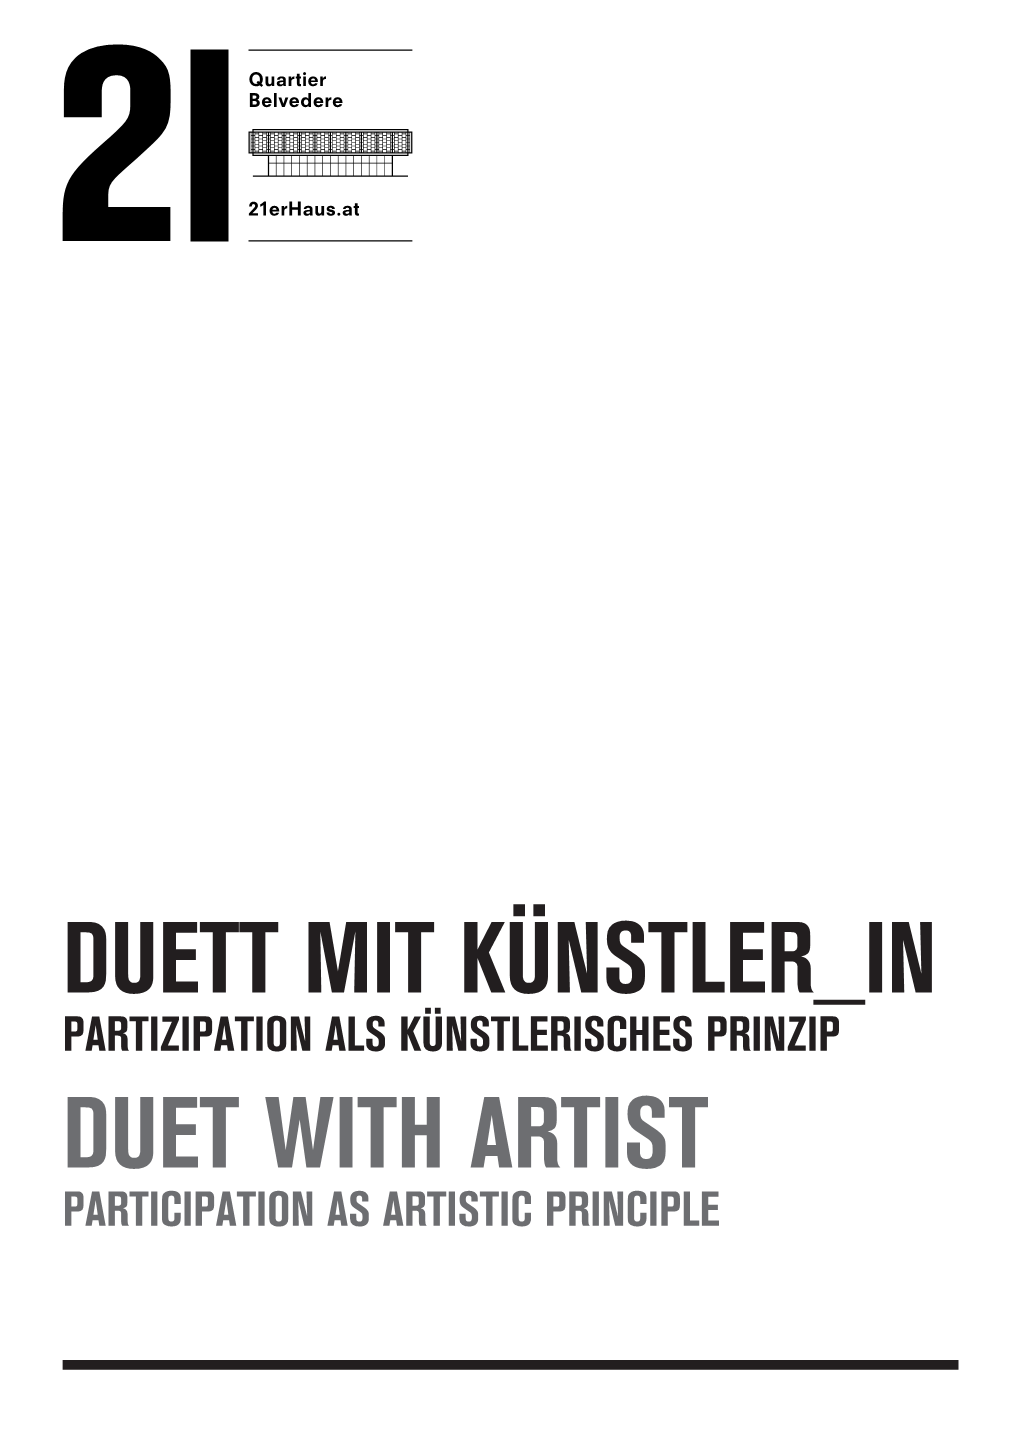 Duett Mit Künstler in Duet with Artist